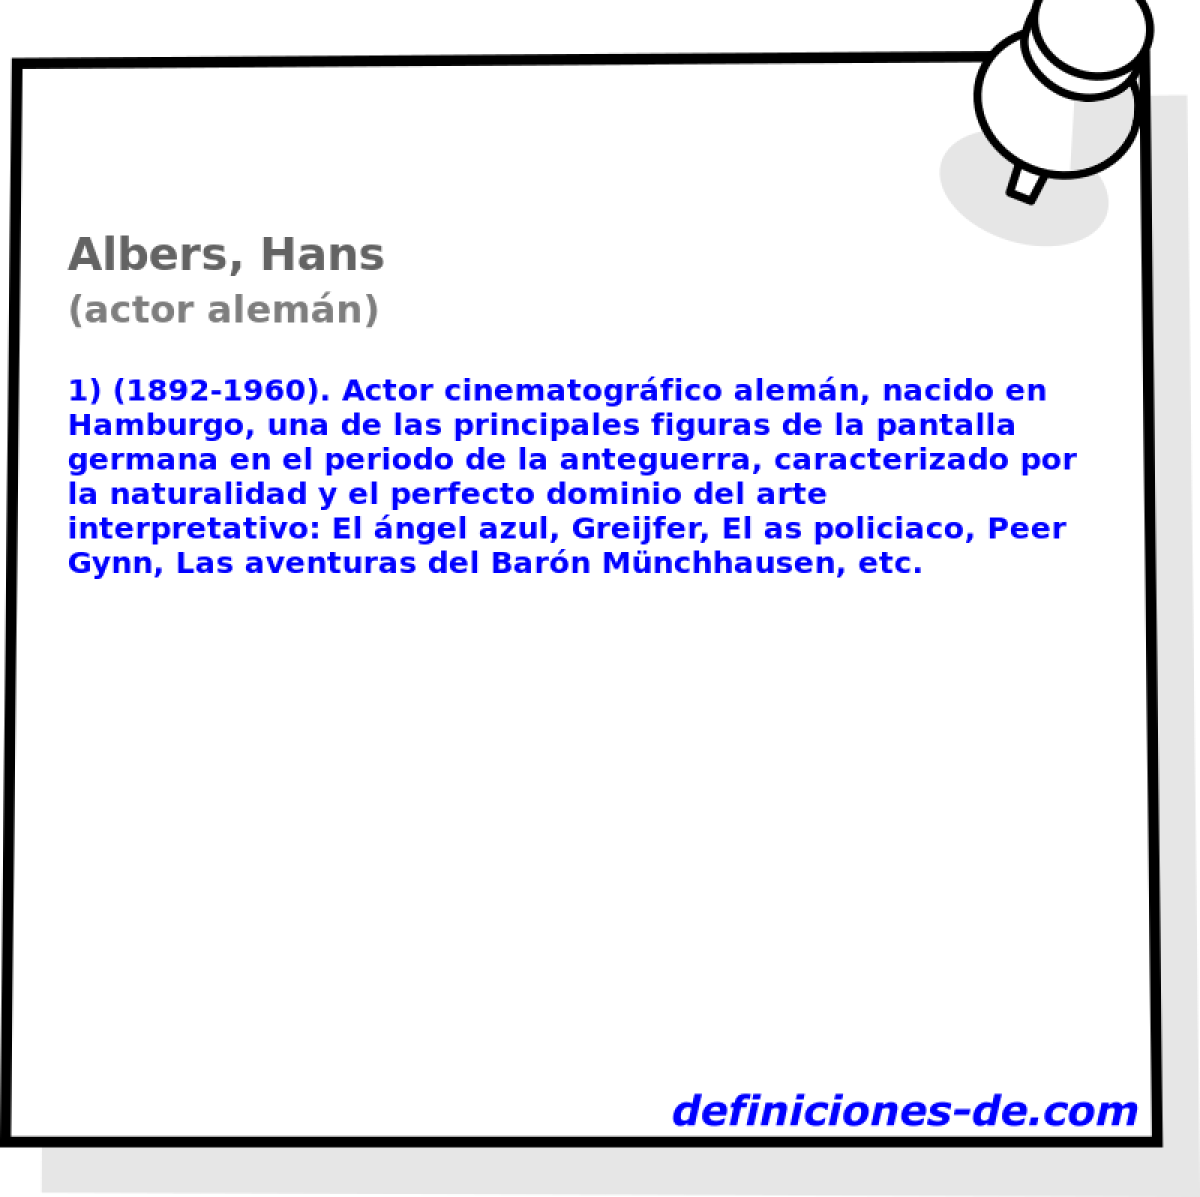 Albers, Hans (actor alemn)